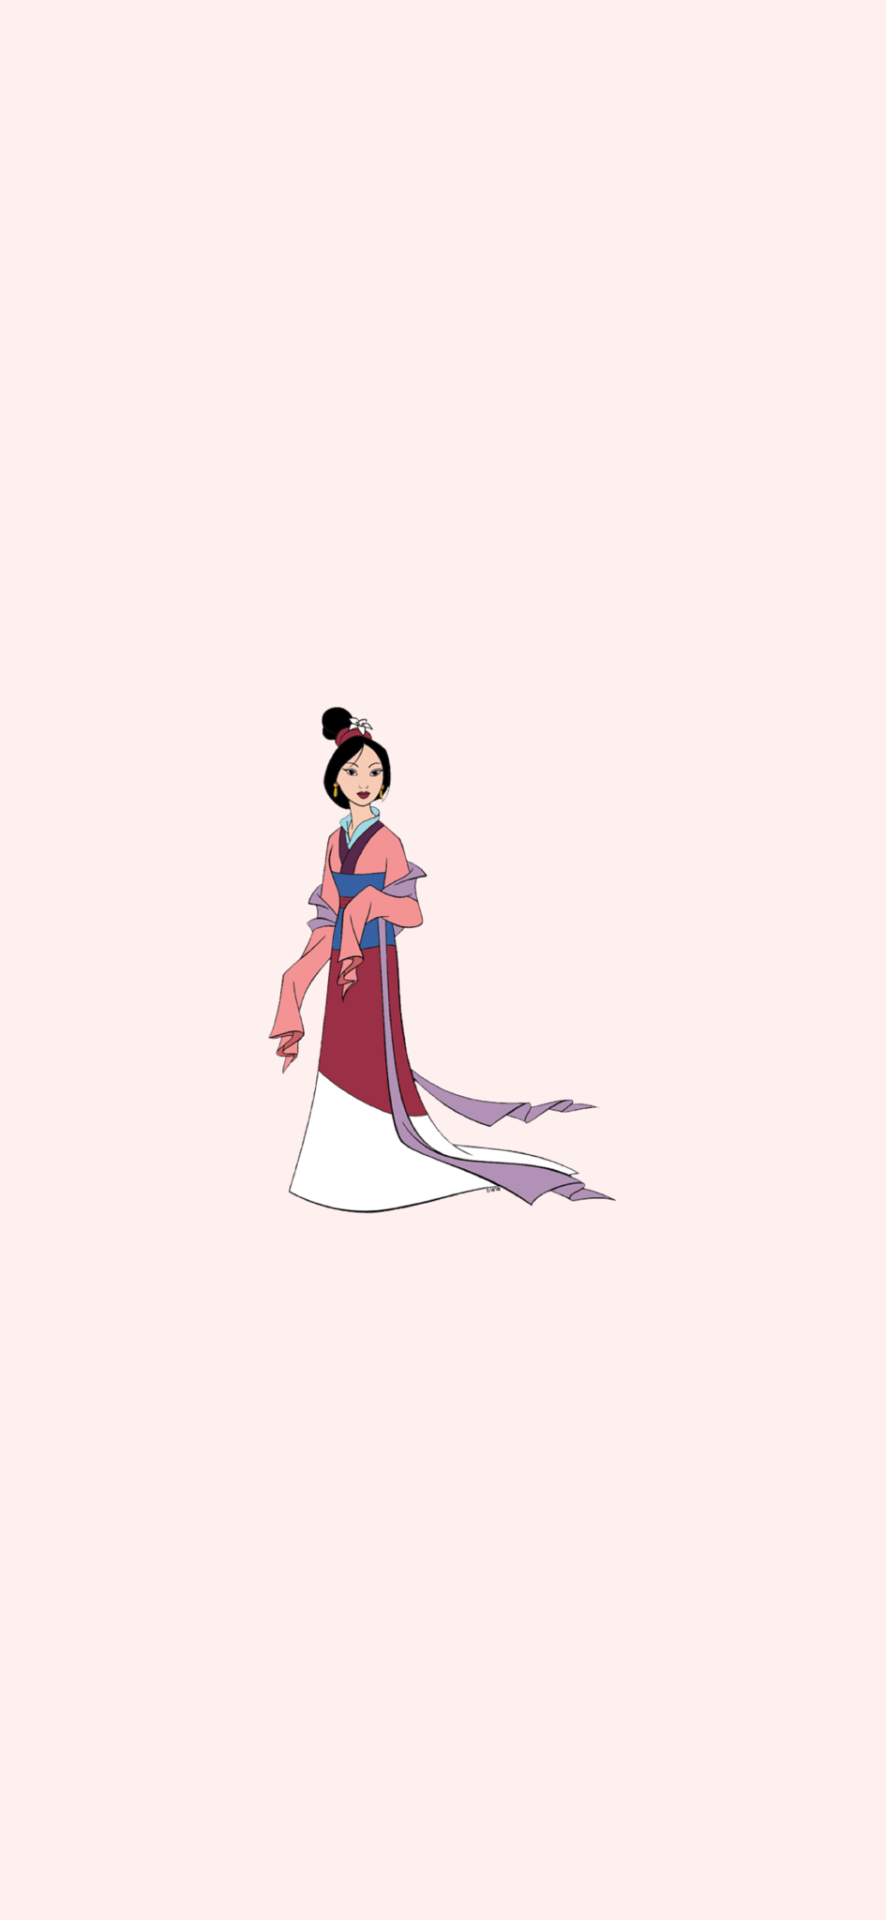 The disney princesses wallpaper - Mulan, Belle